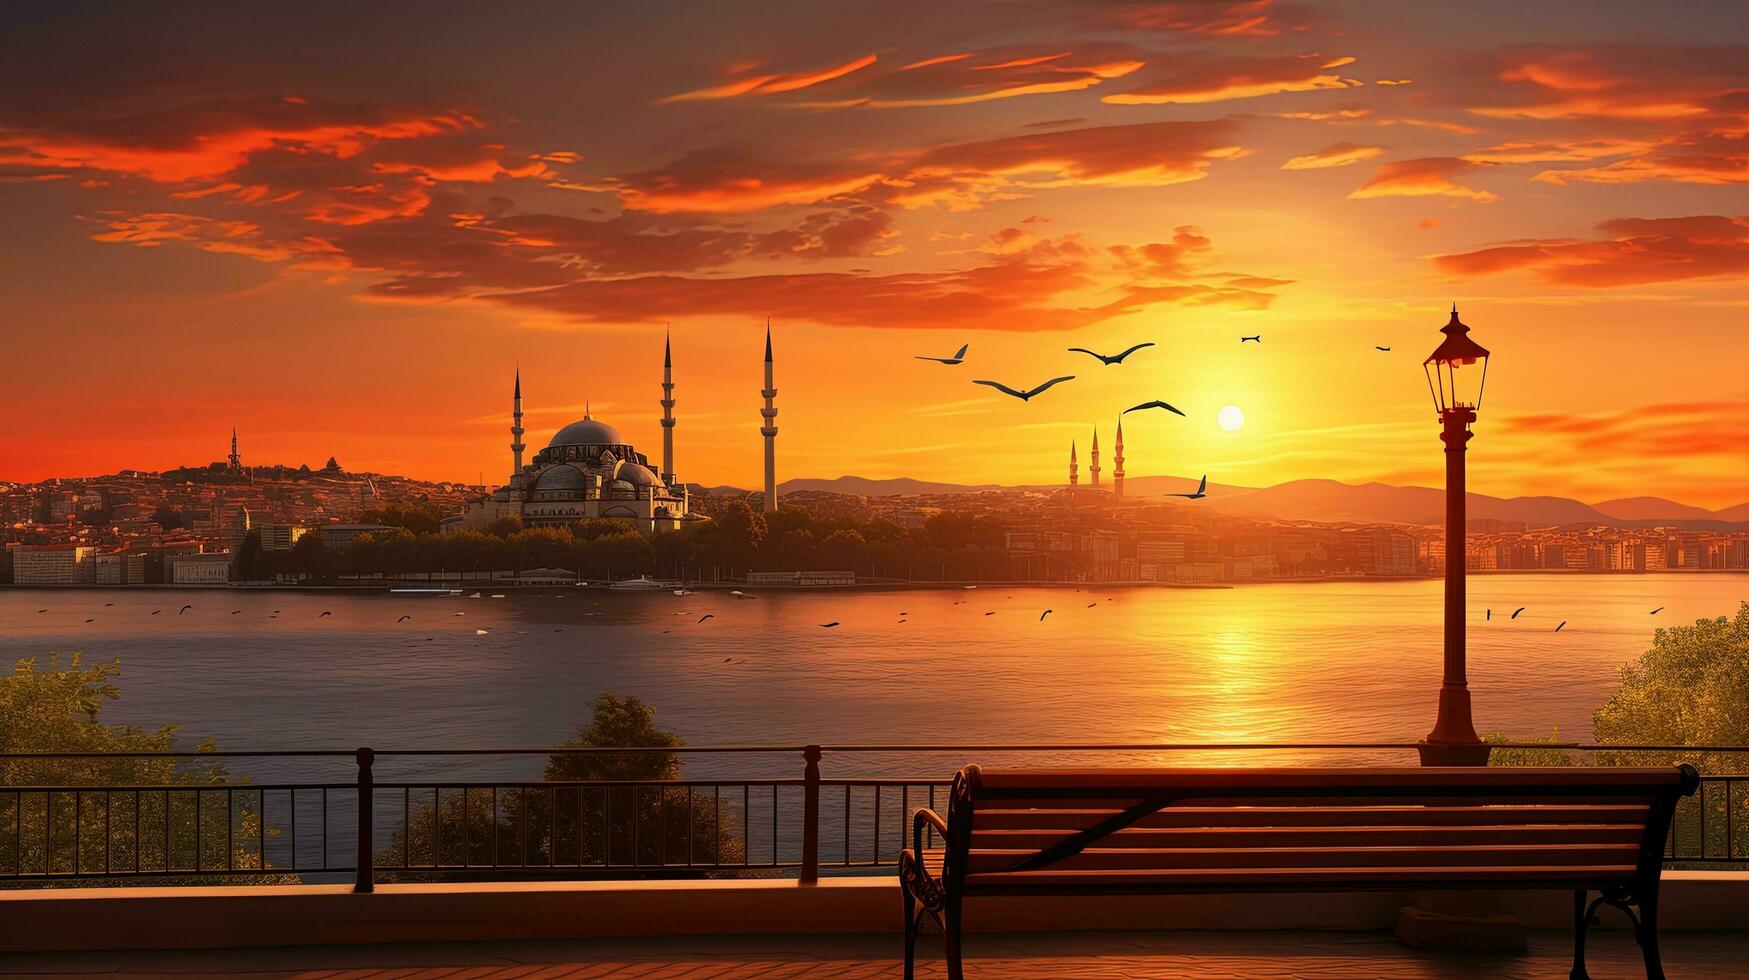 visie van suleymaniye moskee Bij zonsondergang in Istanbul kalkoen van salacak. silhouet concept foto